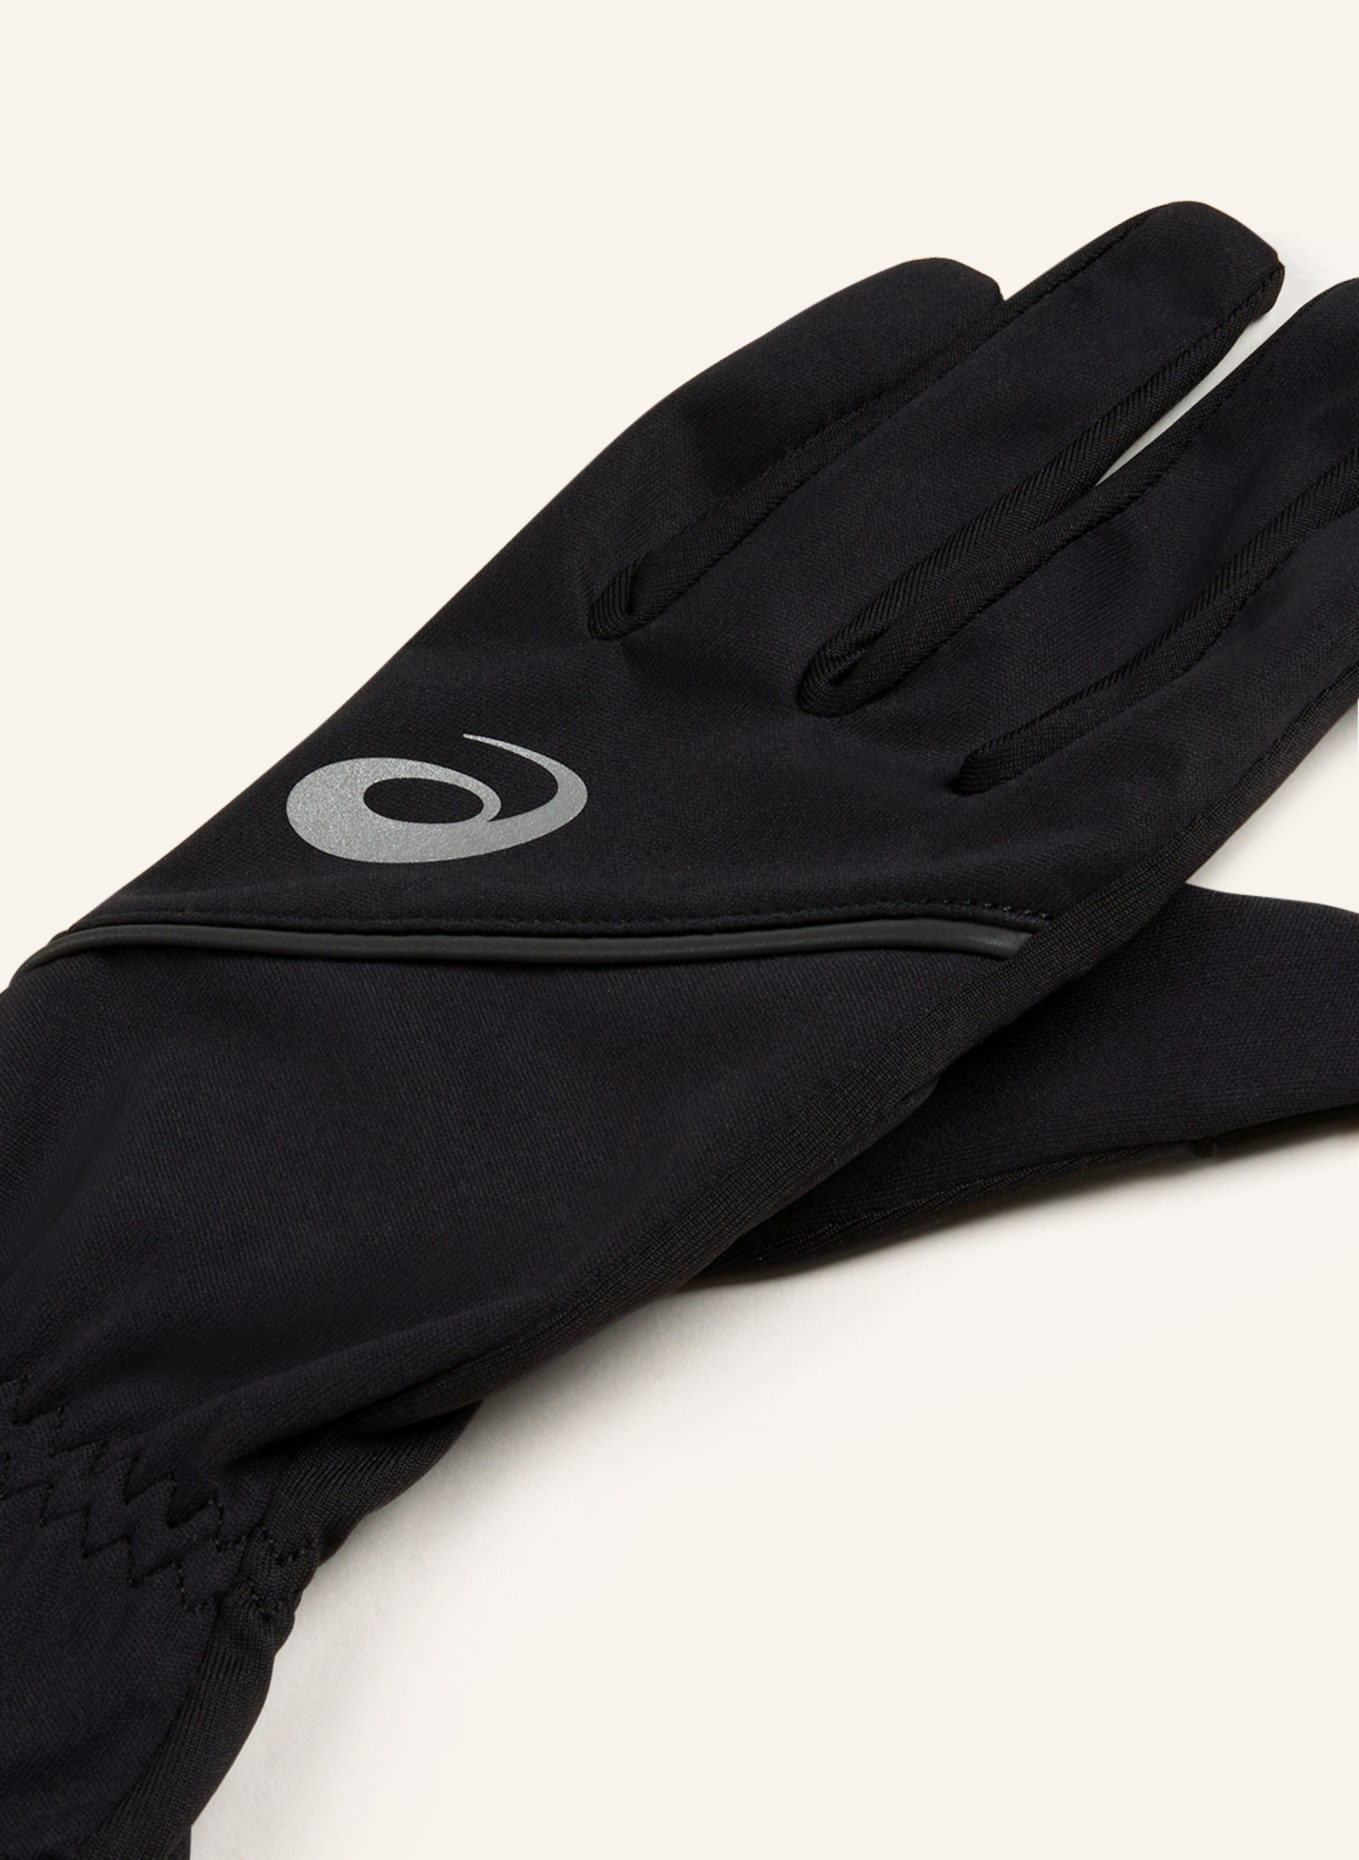 Multisport-Handschuhe schwarz Touchscreen-Funktion THERMAL ASICS GLOVES mit in